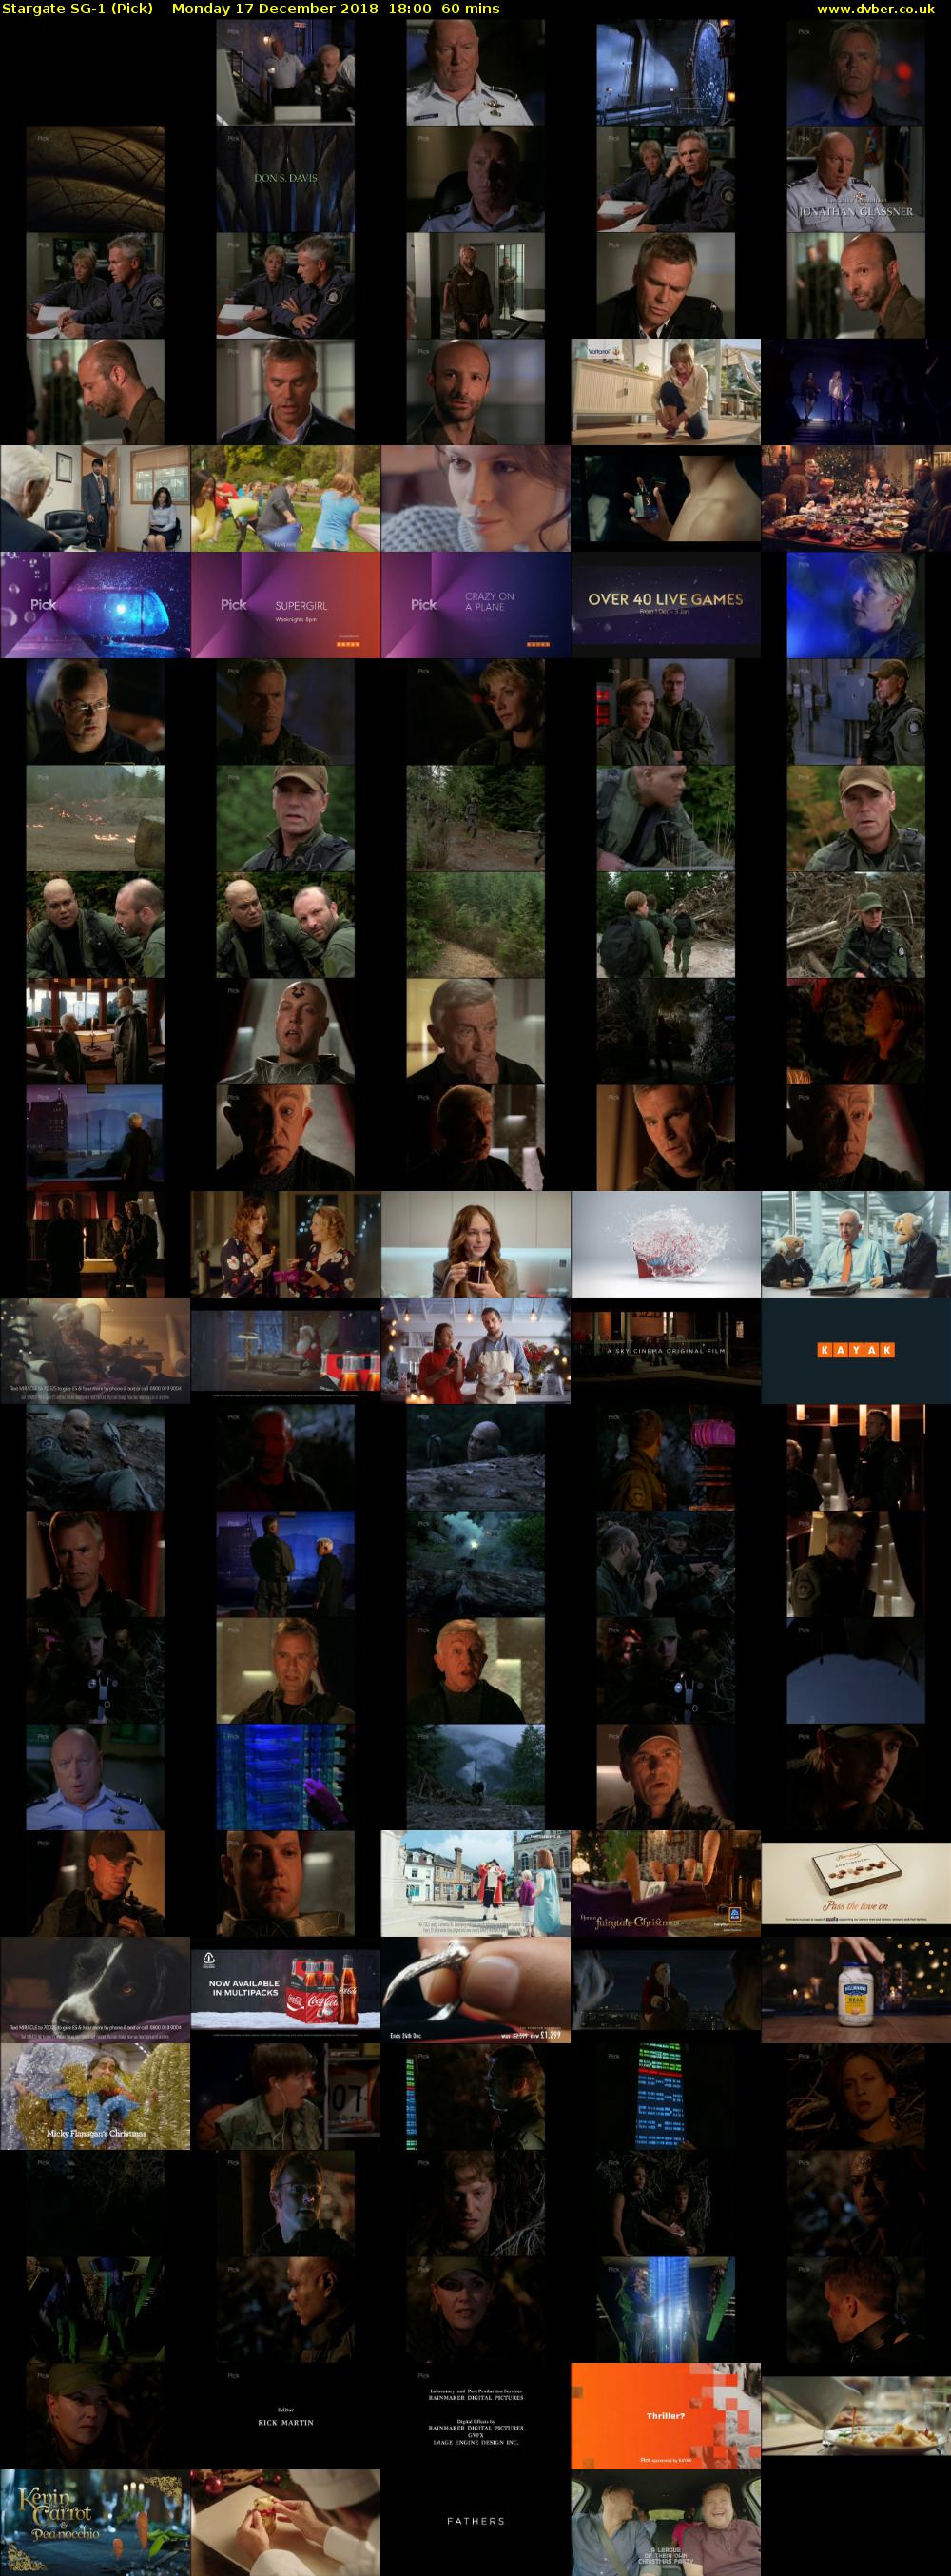 Stargate SG-1 (Pick) Monday 17 December 2018 18:00 - 19:00